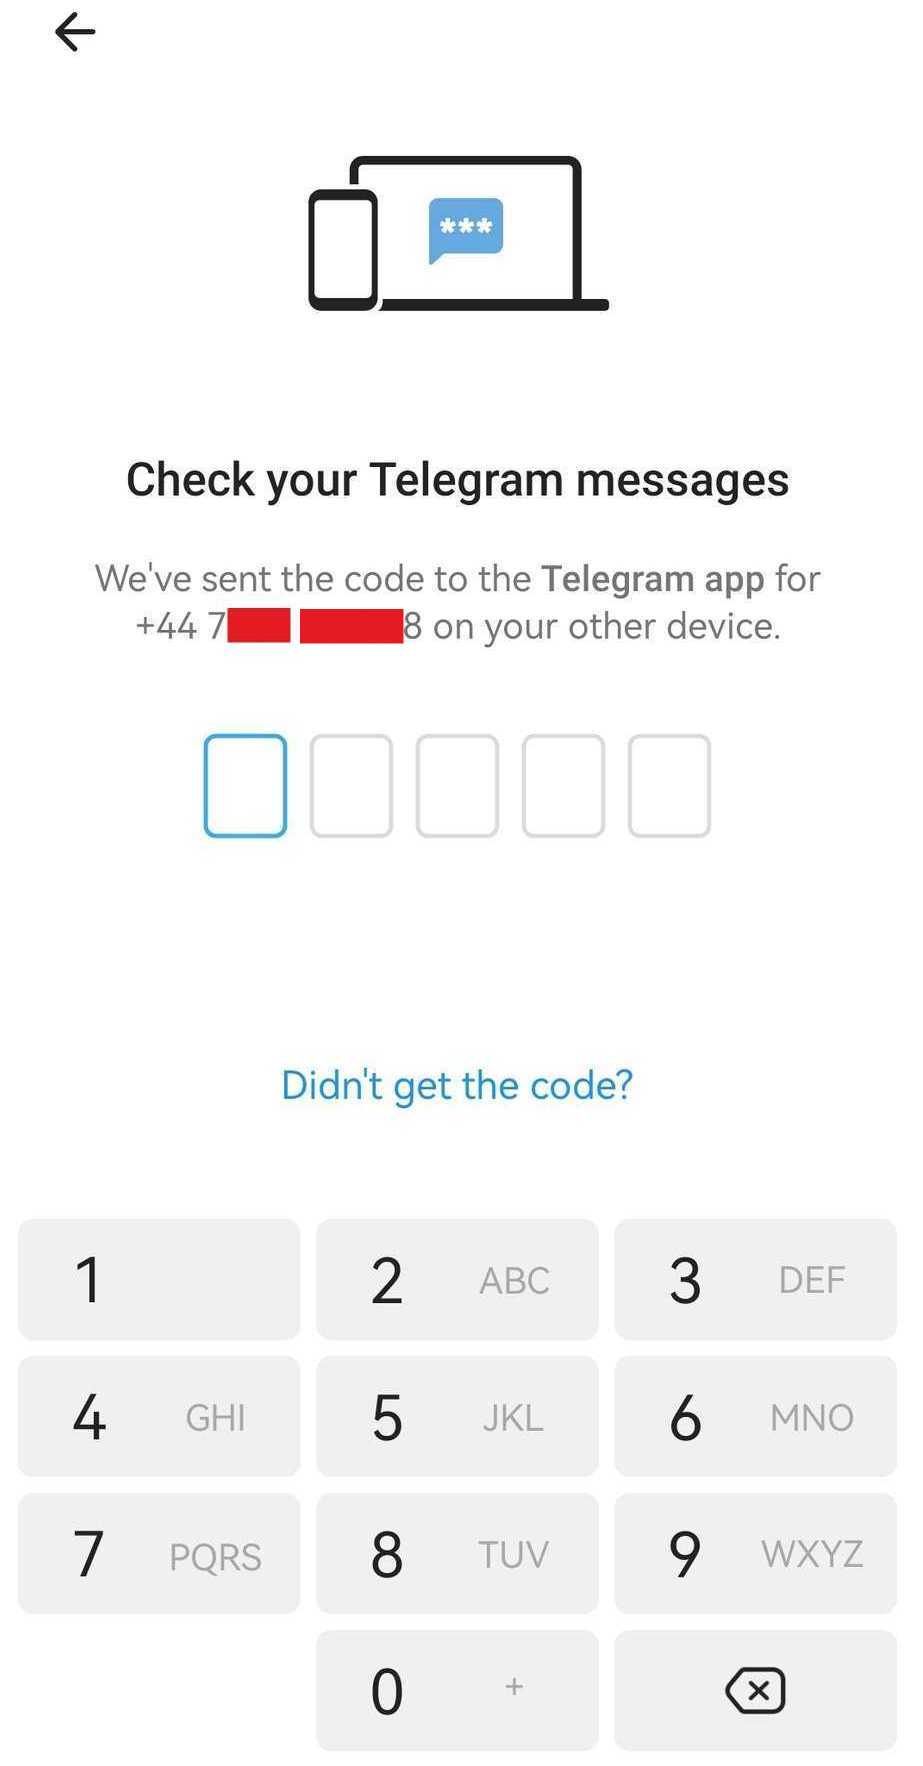 Басқа құрылғыларға Telegram SMS растау кодын жіберу мәселесін қалай шешуге болады